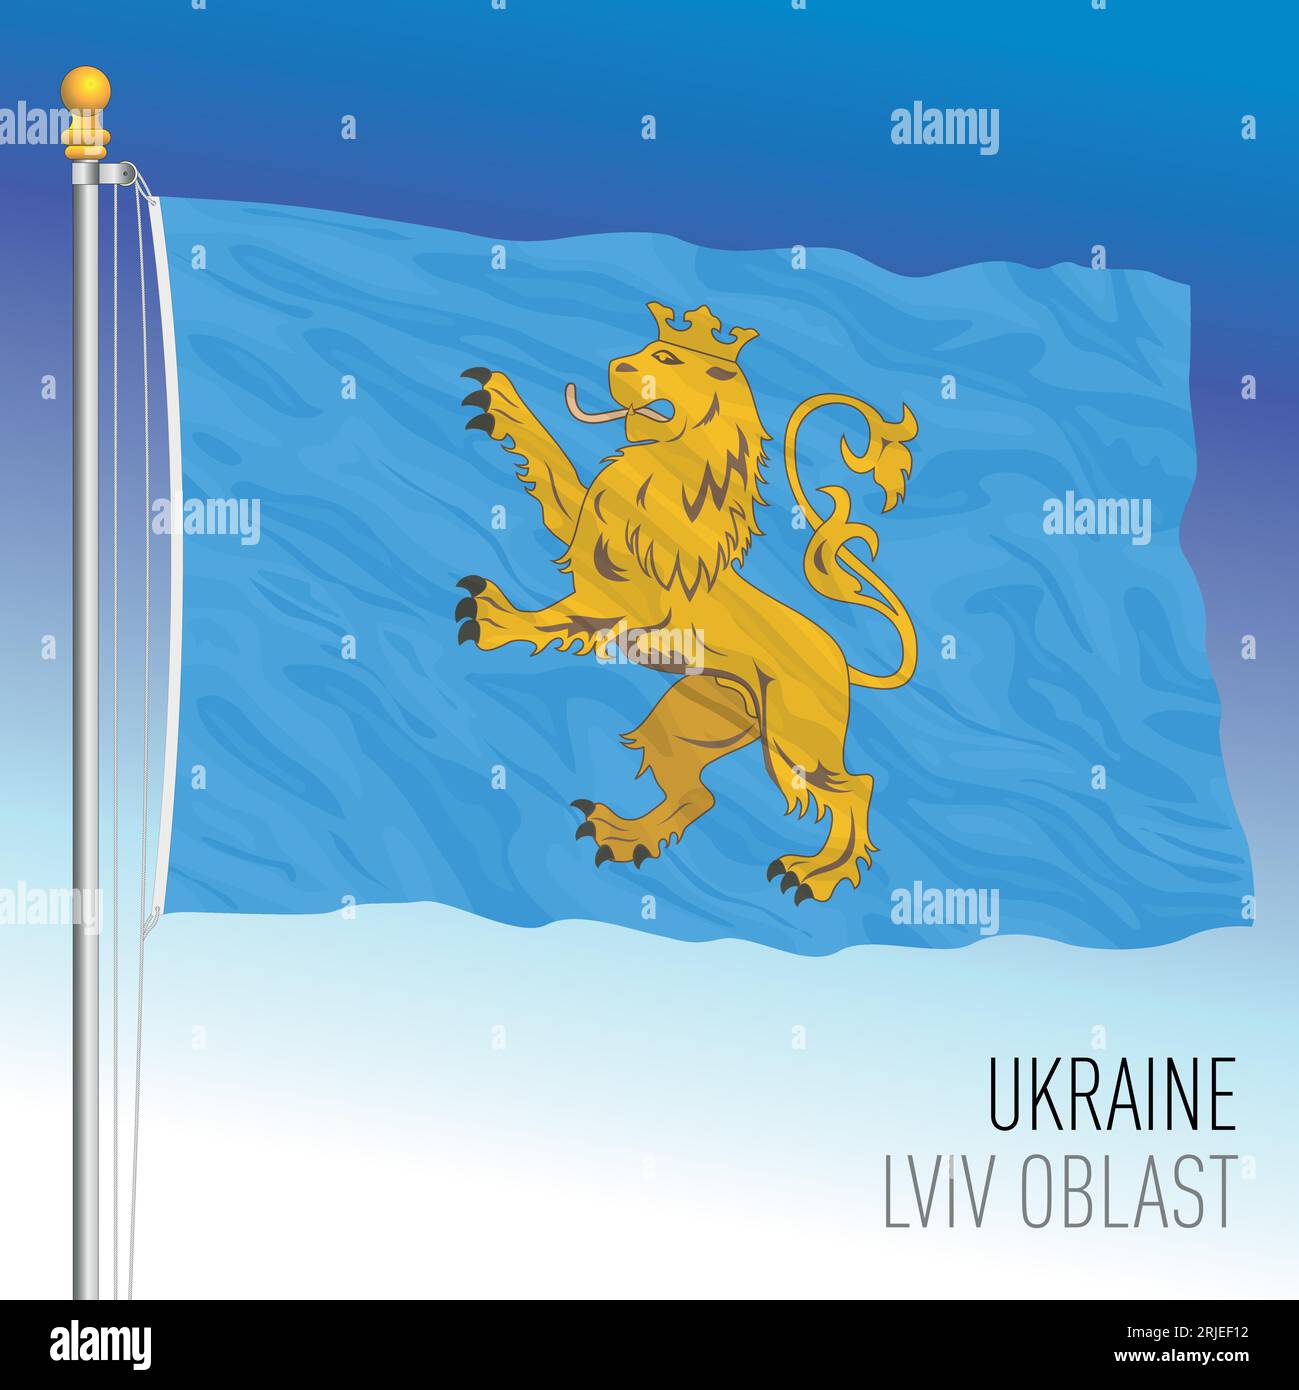 Ukraine, Lviv Oblast waving flag, europe, vector illustration Stock Vector